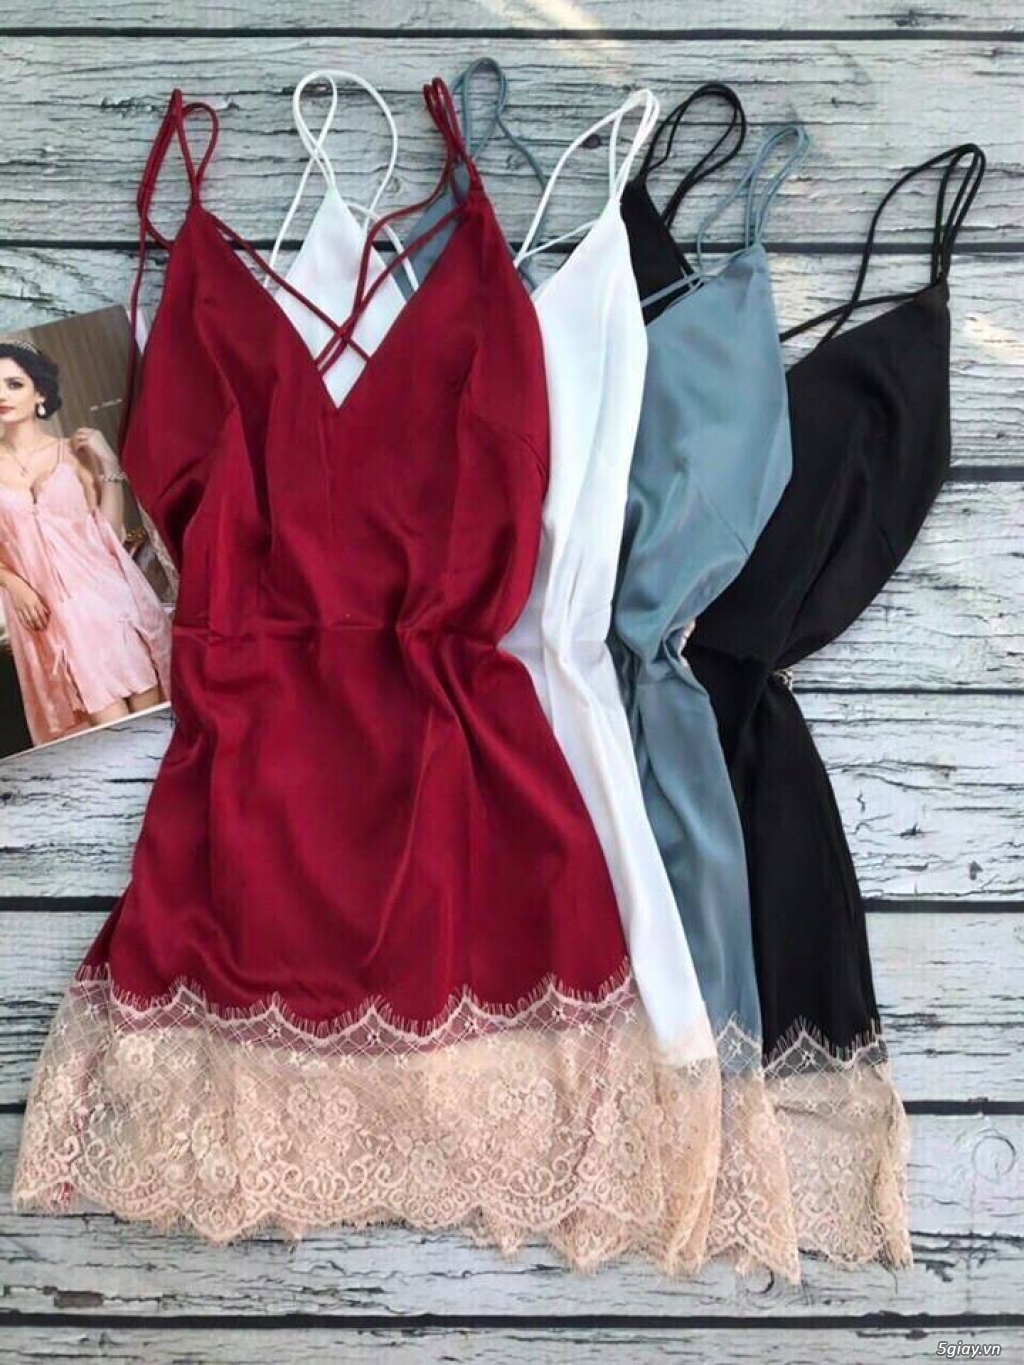 Shop Hiền: Đầm ngủ sẹc xy quyến rủ cho cac nàng ngày valentine 2018 - 22